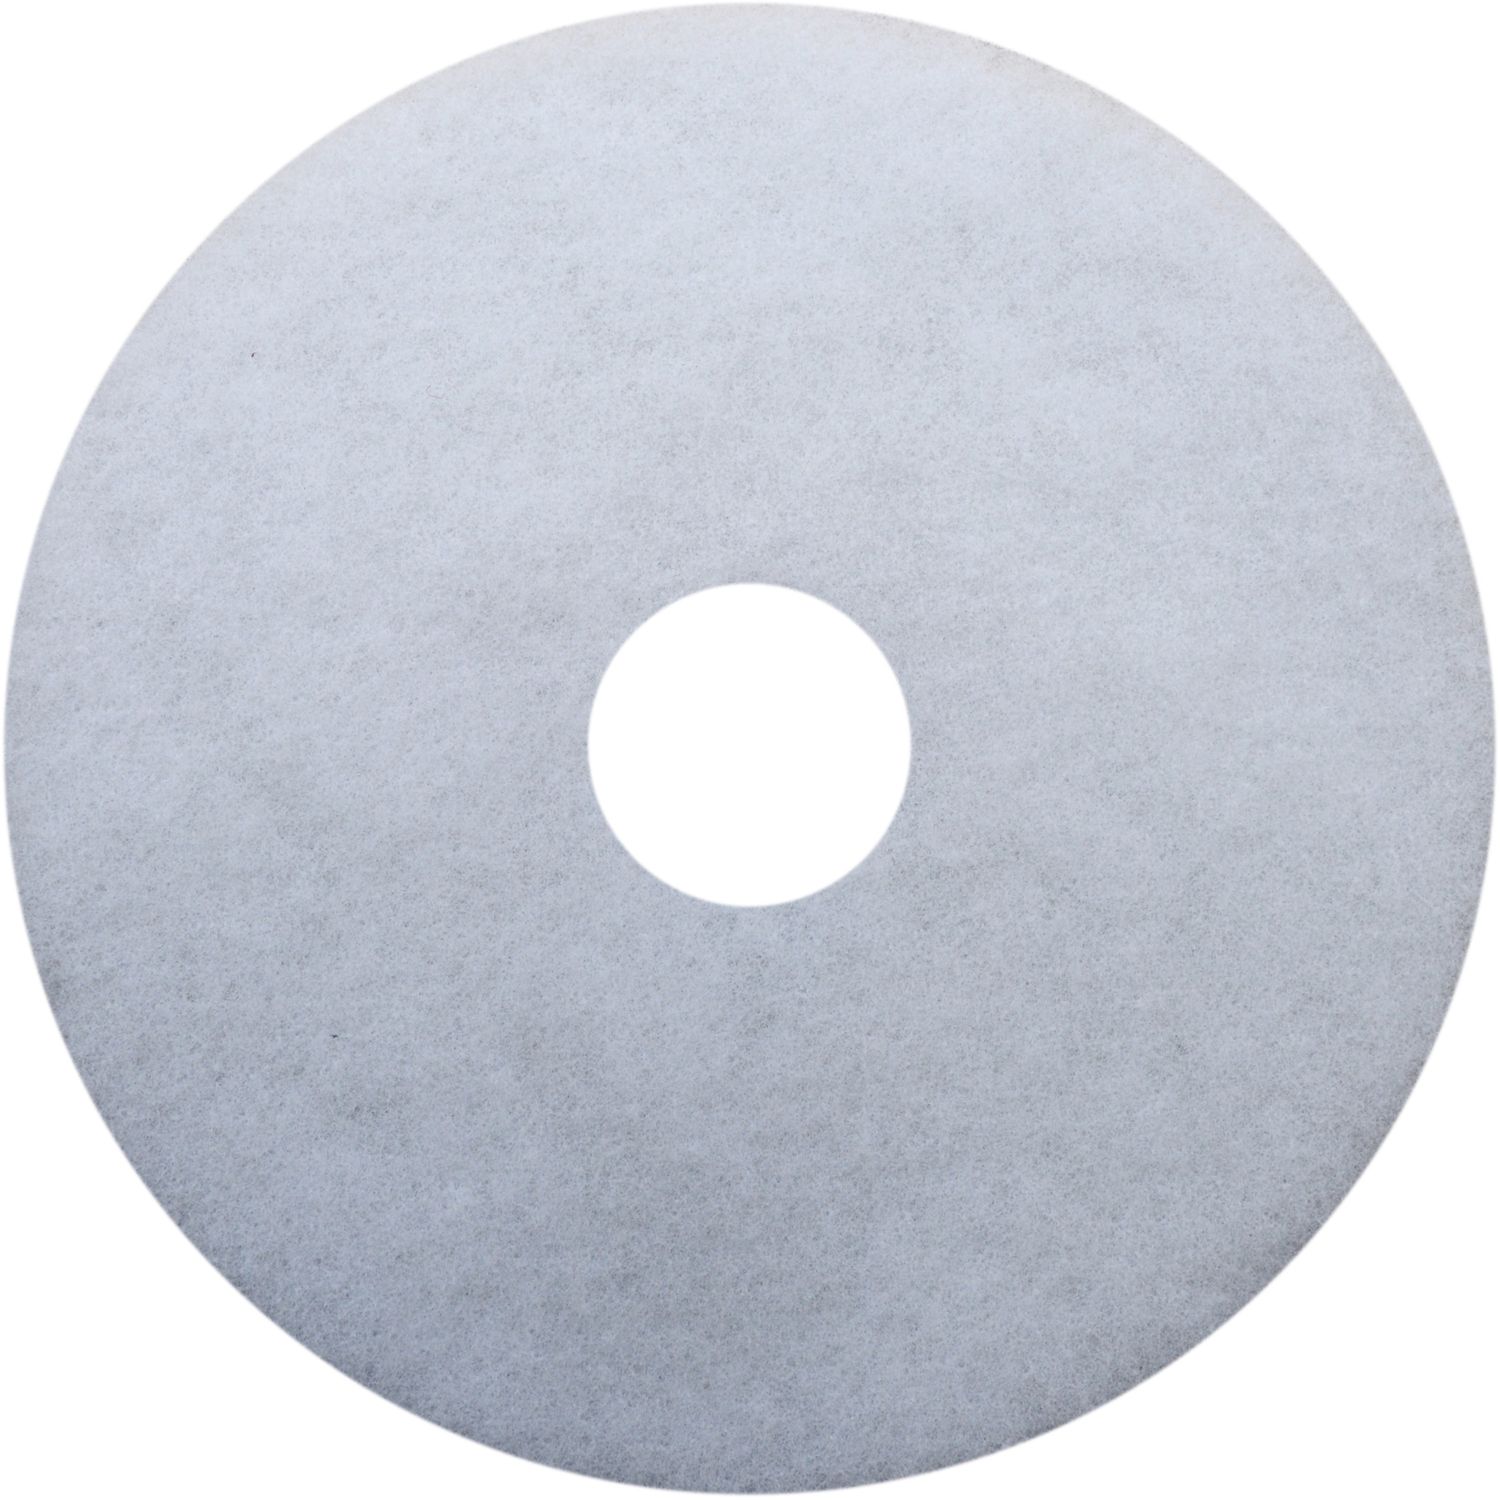 17" Earth White Polishing Floor Pad 17" Diameter x 17" Diameter, Fiber, White